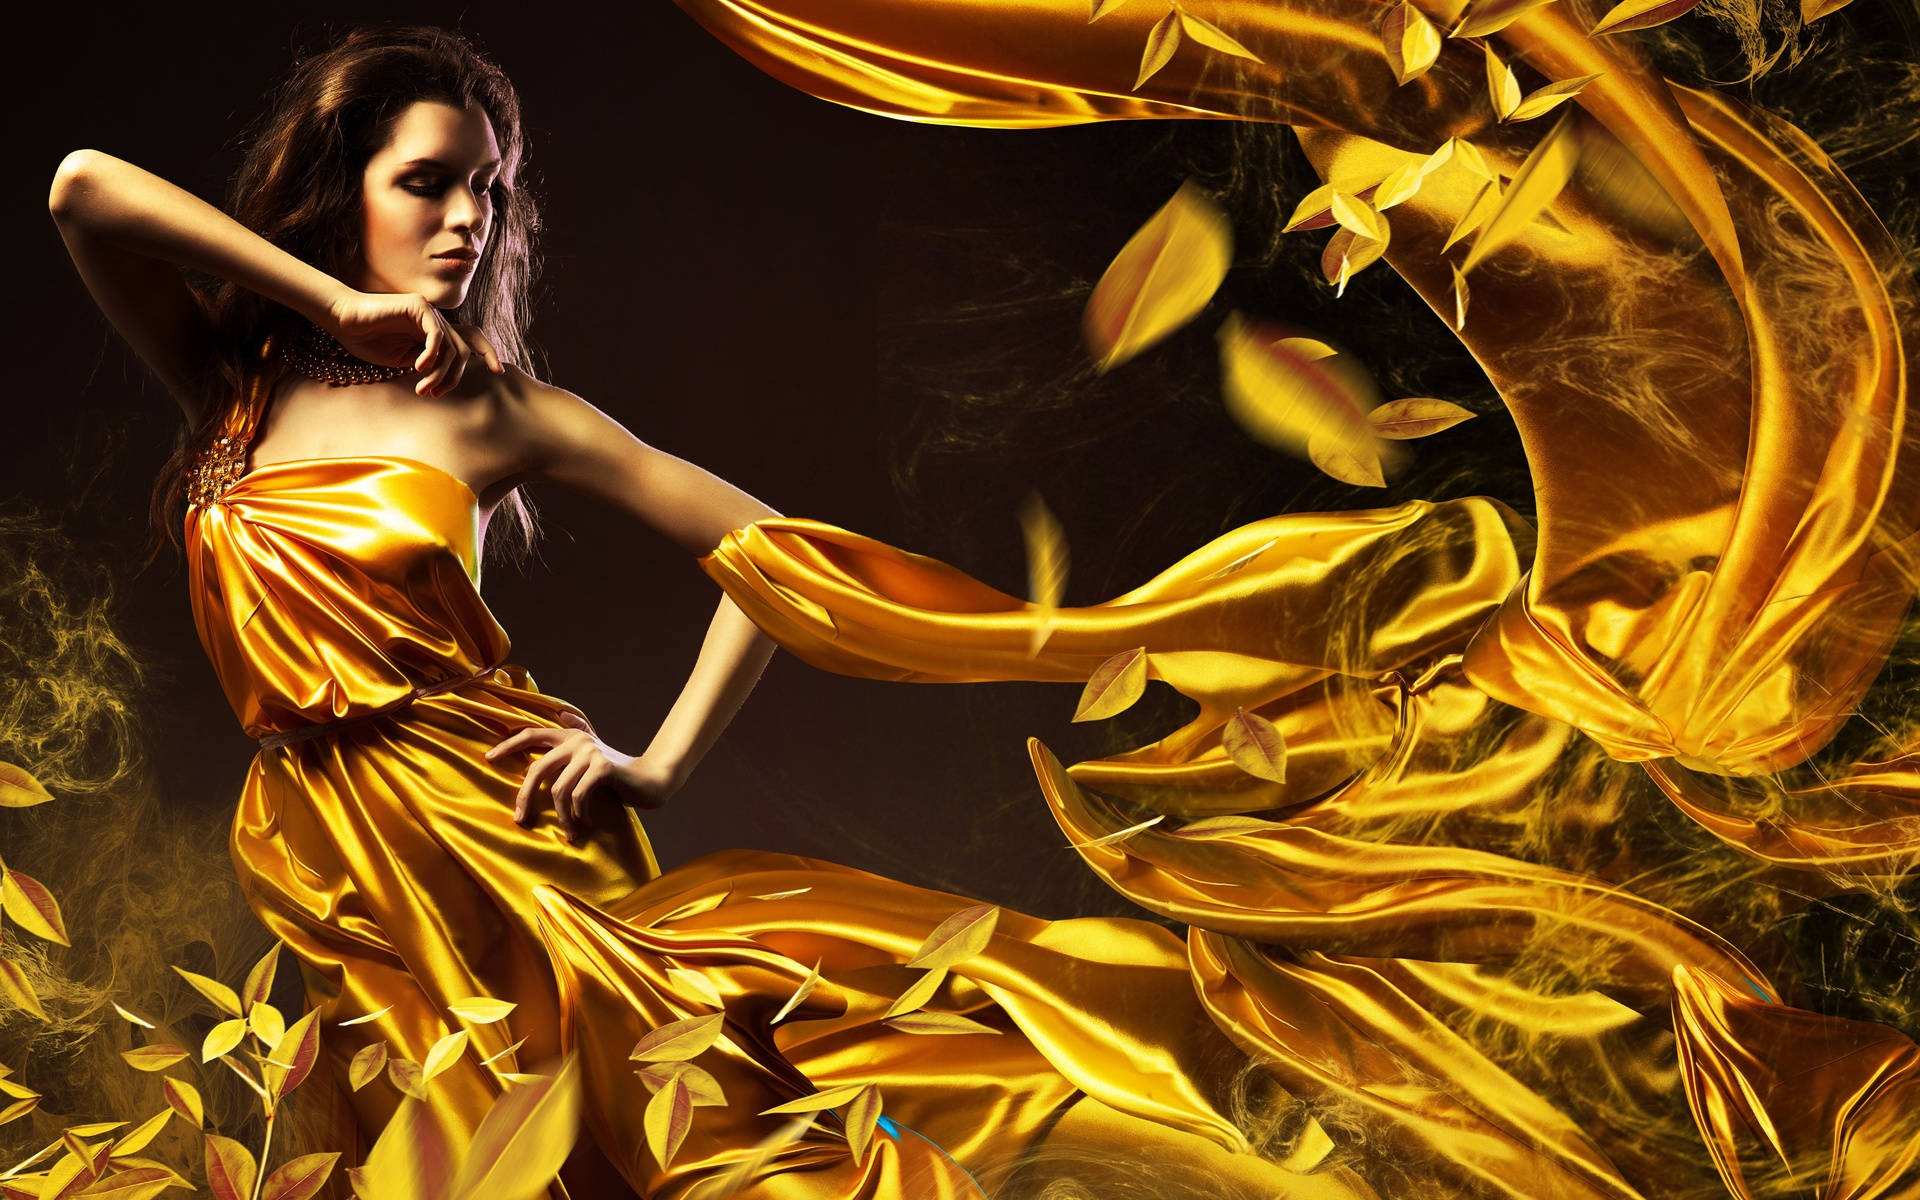 Fashion model in gold silky dress wallpaper.